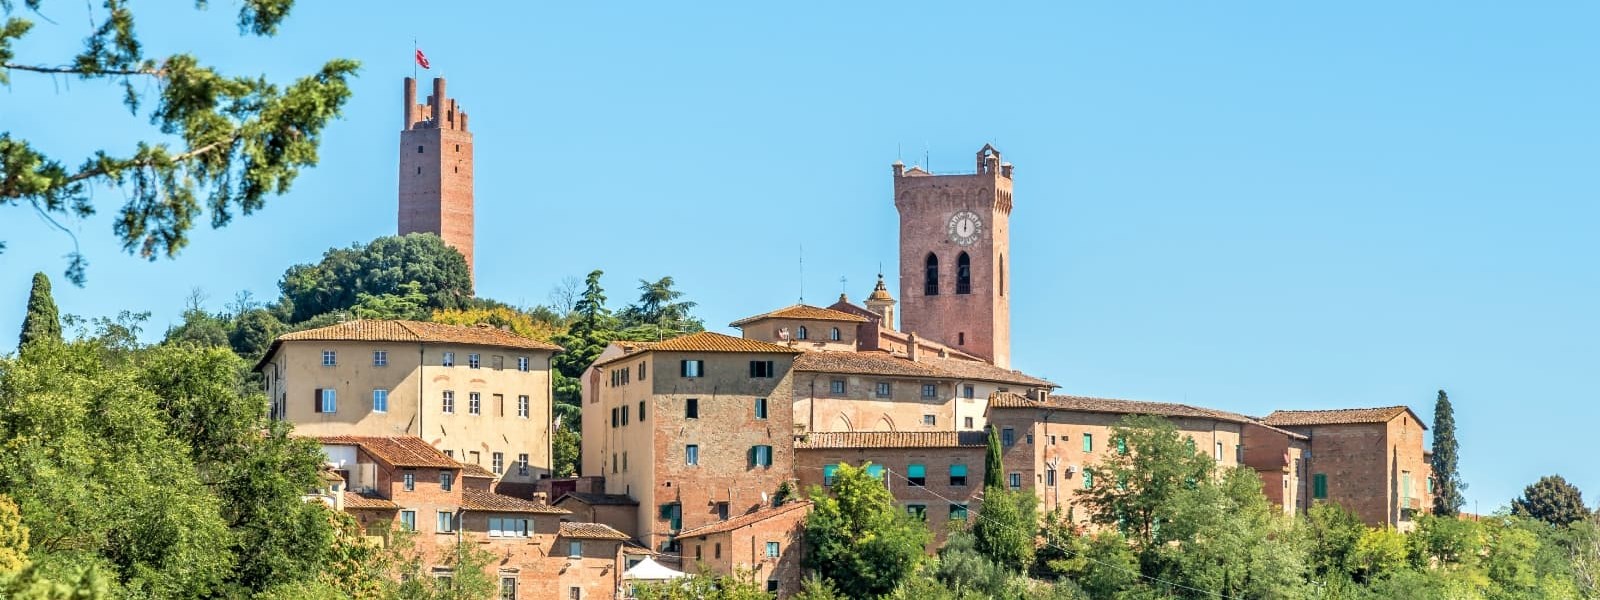 San Miniato i Pisa i Toscana i Italien